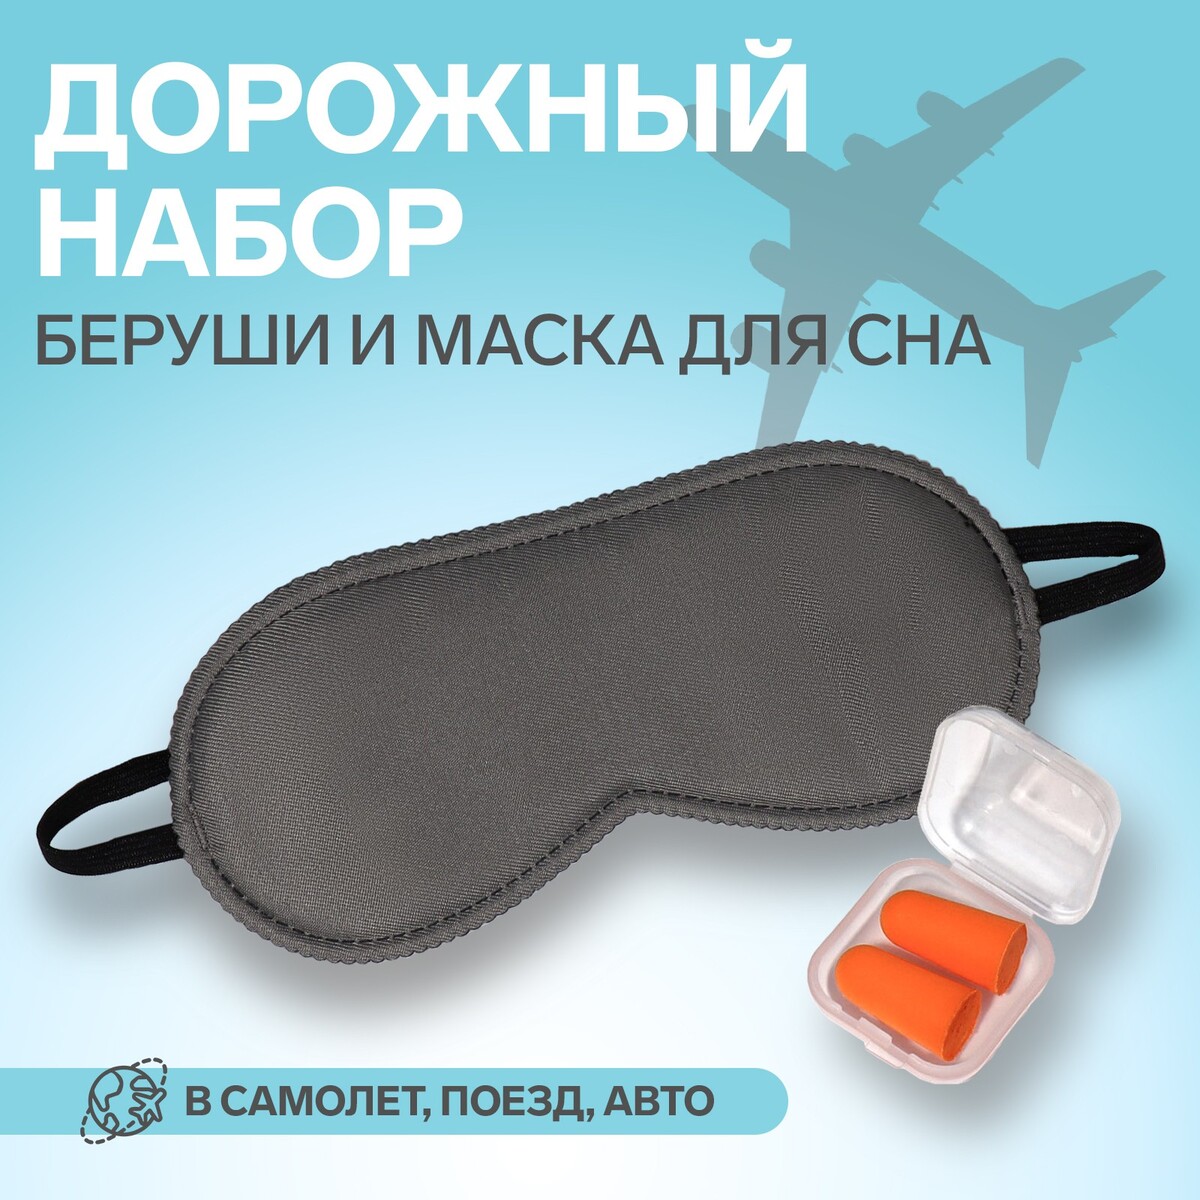 Набор туристический: маска для сна, беруши в футляре набор для плавания взрослый onlytop очки беруши шапочка обхват 54 60 см